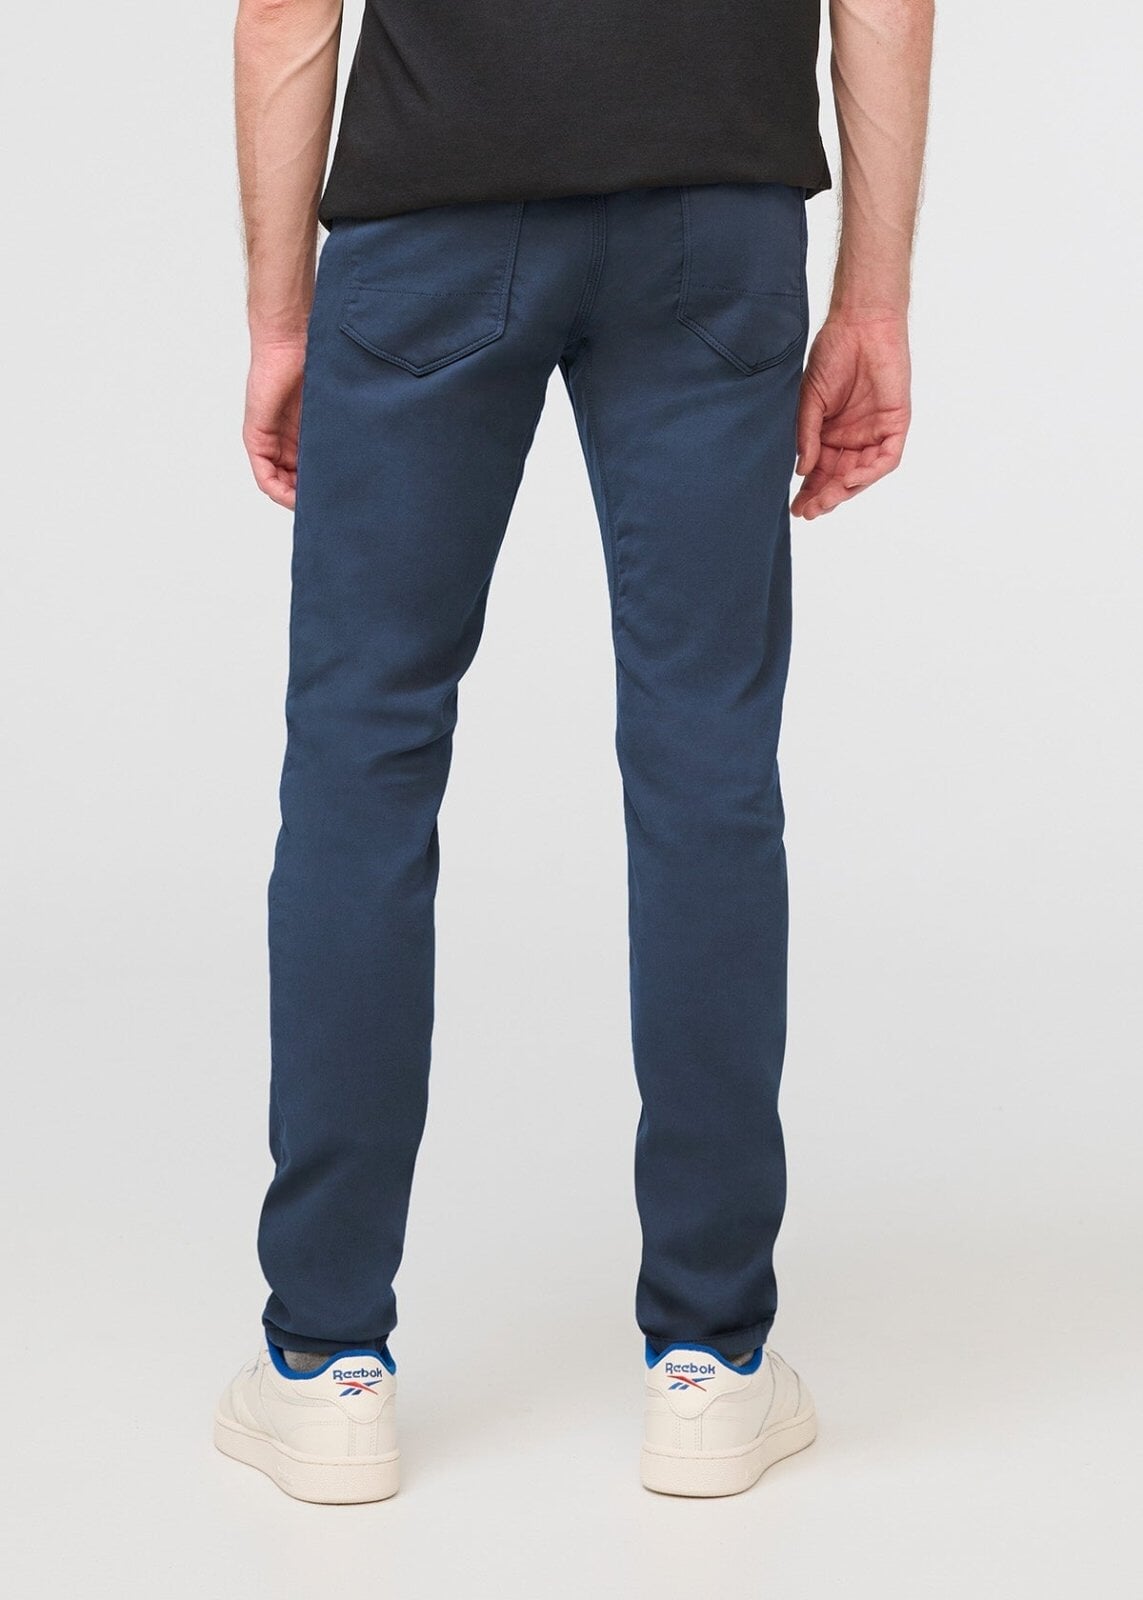 Navy Blue Slim Machine Washable Plain Front Smart Trousers